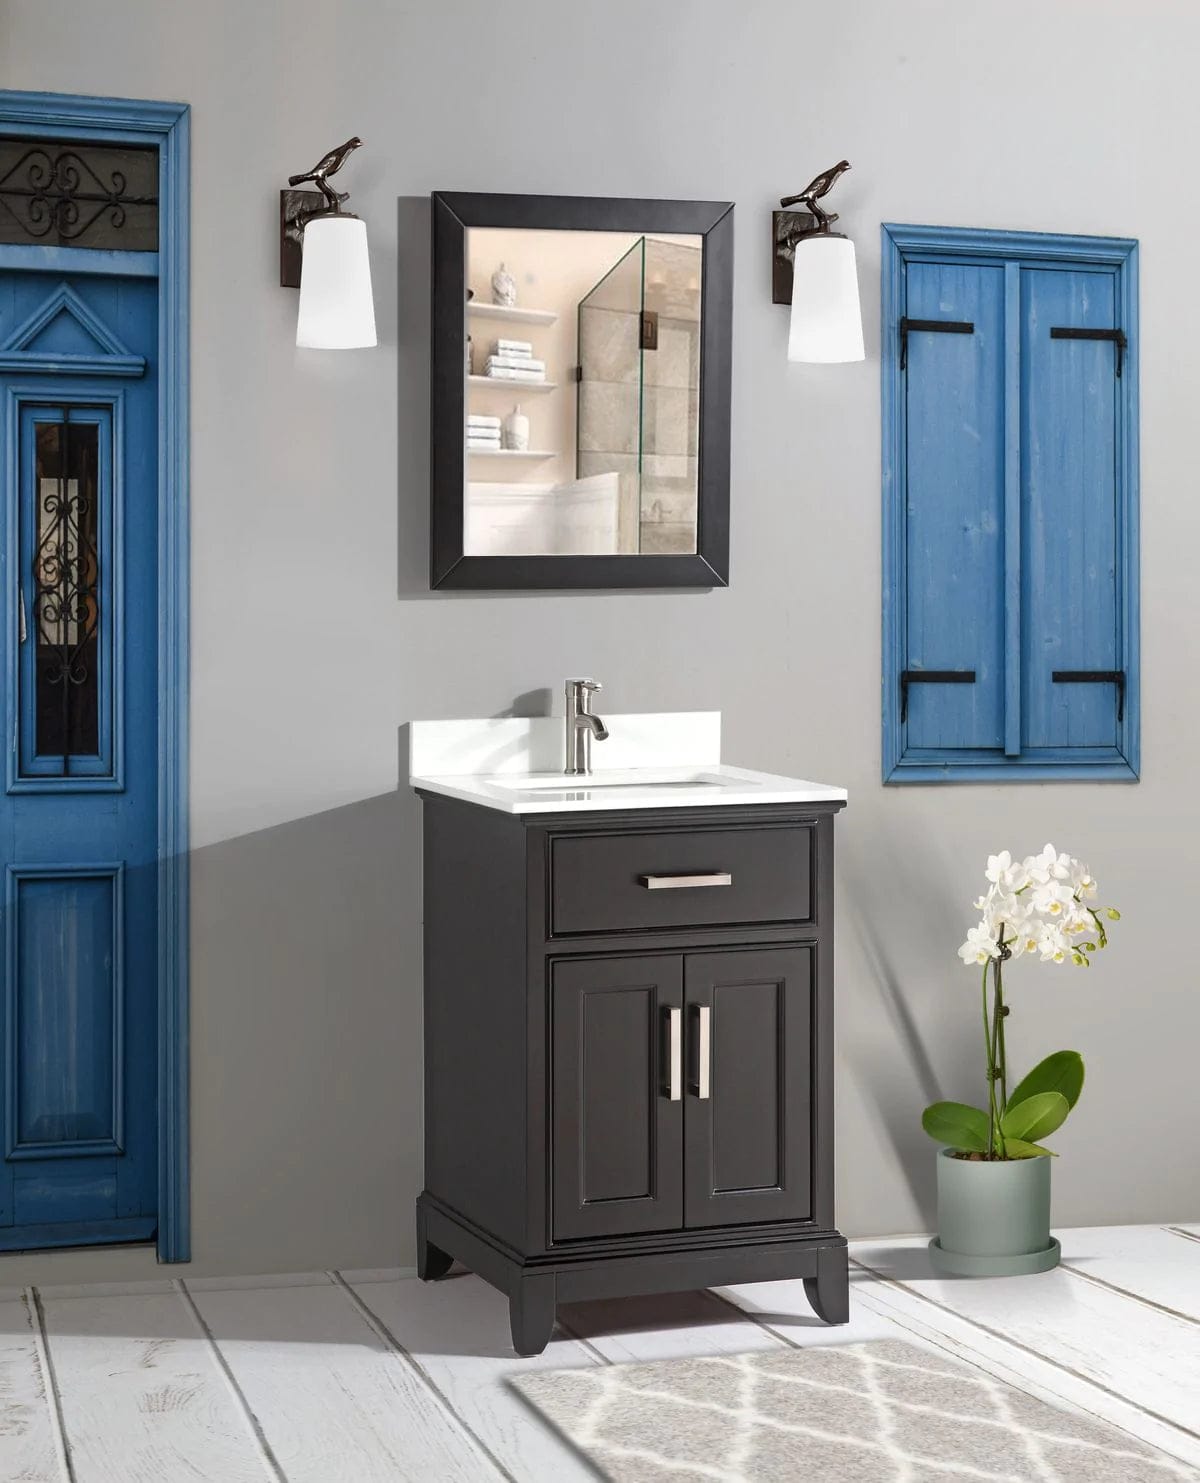 30 in. Single Sink Bathroom Vanity Set in Espresso - Decohub Home